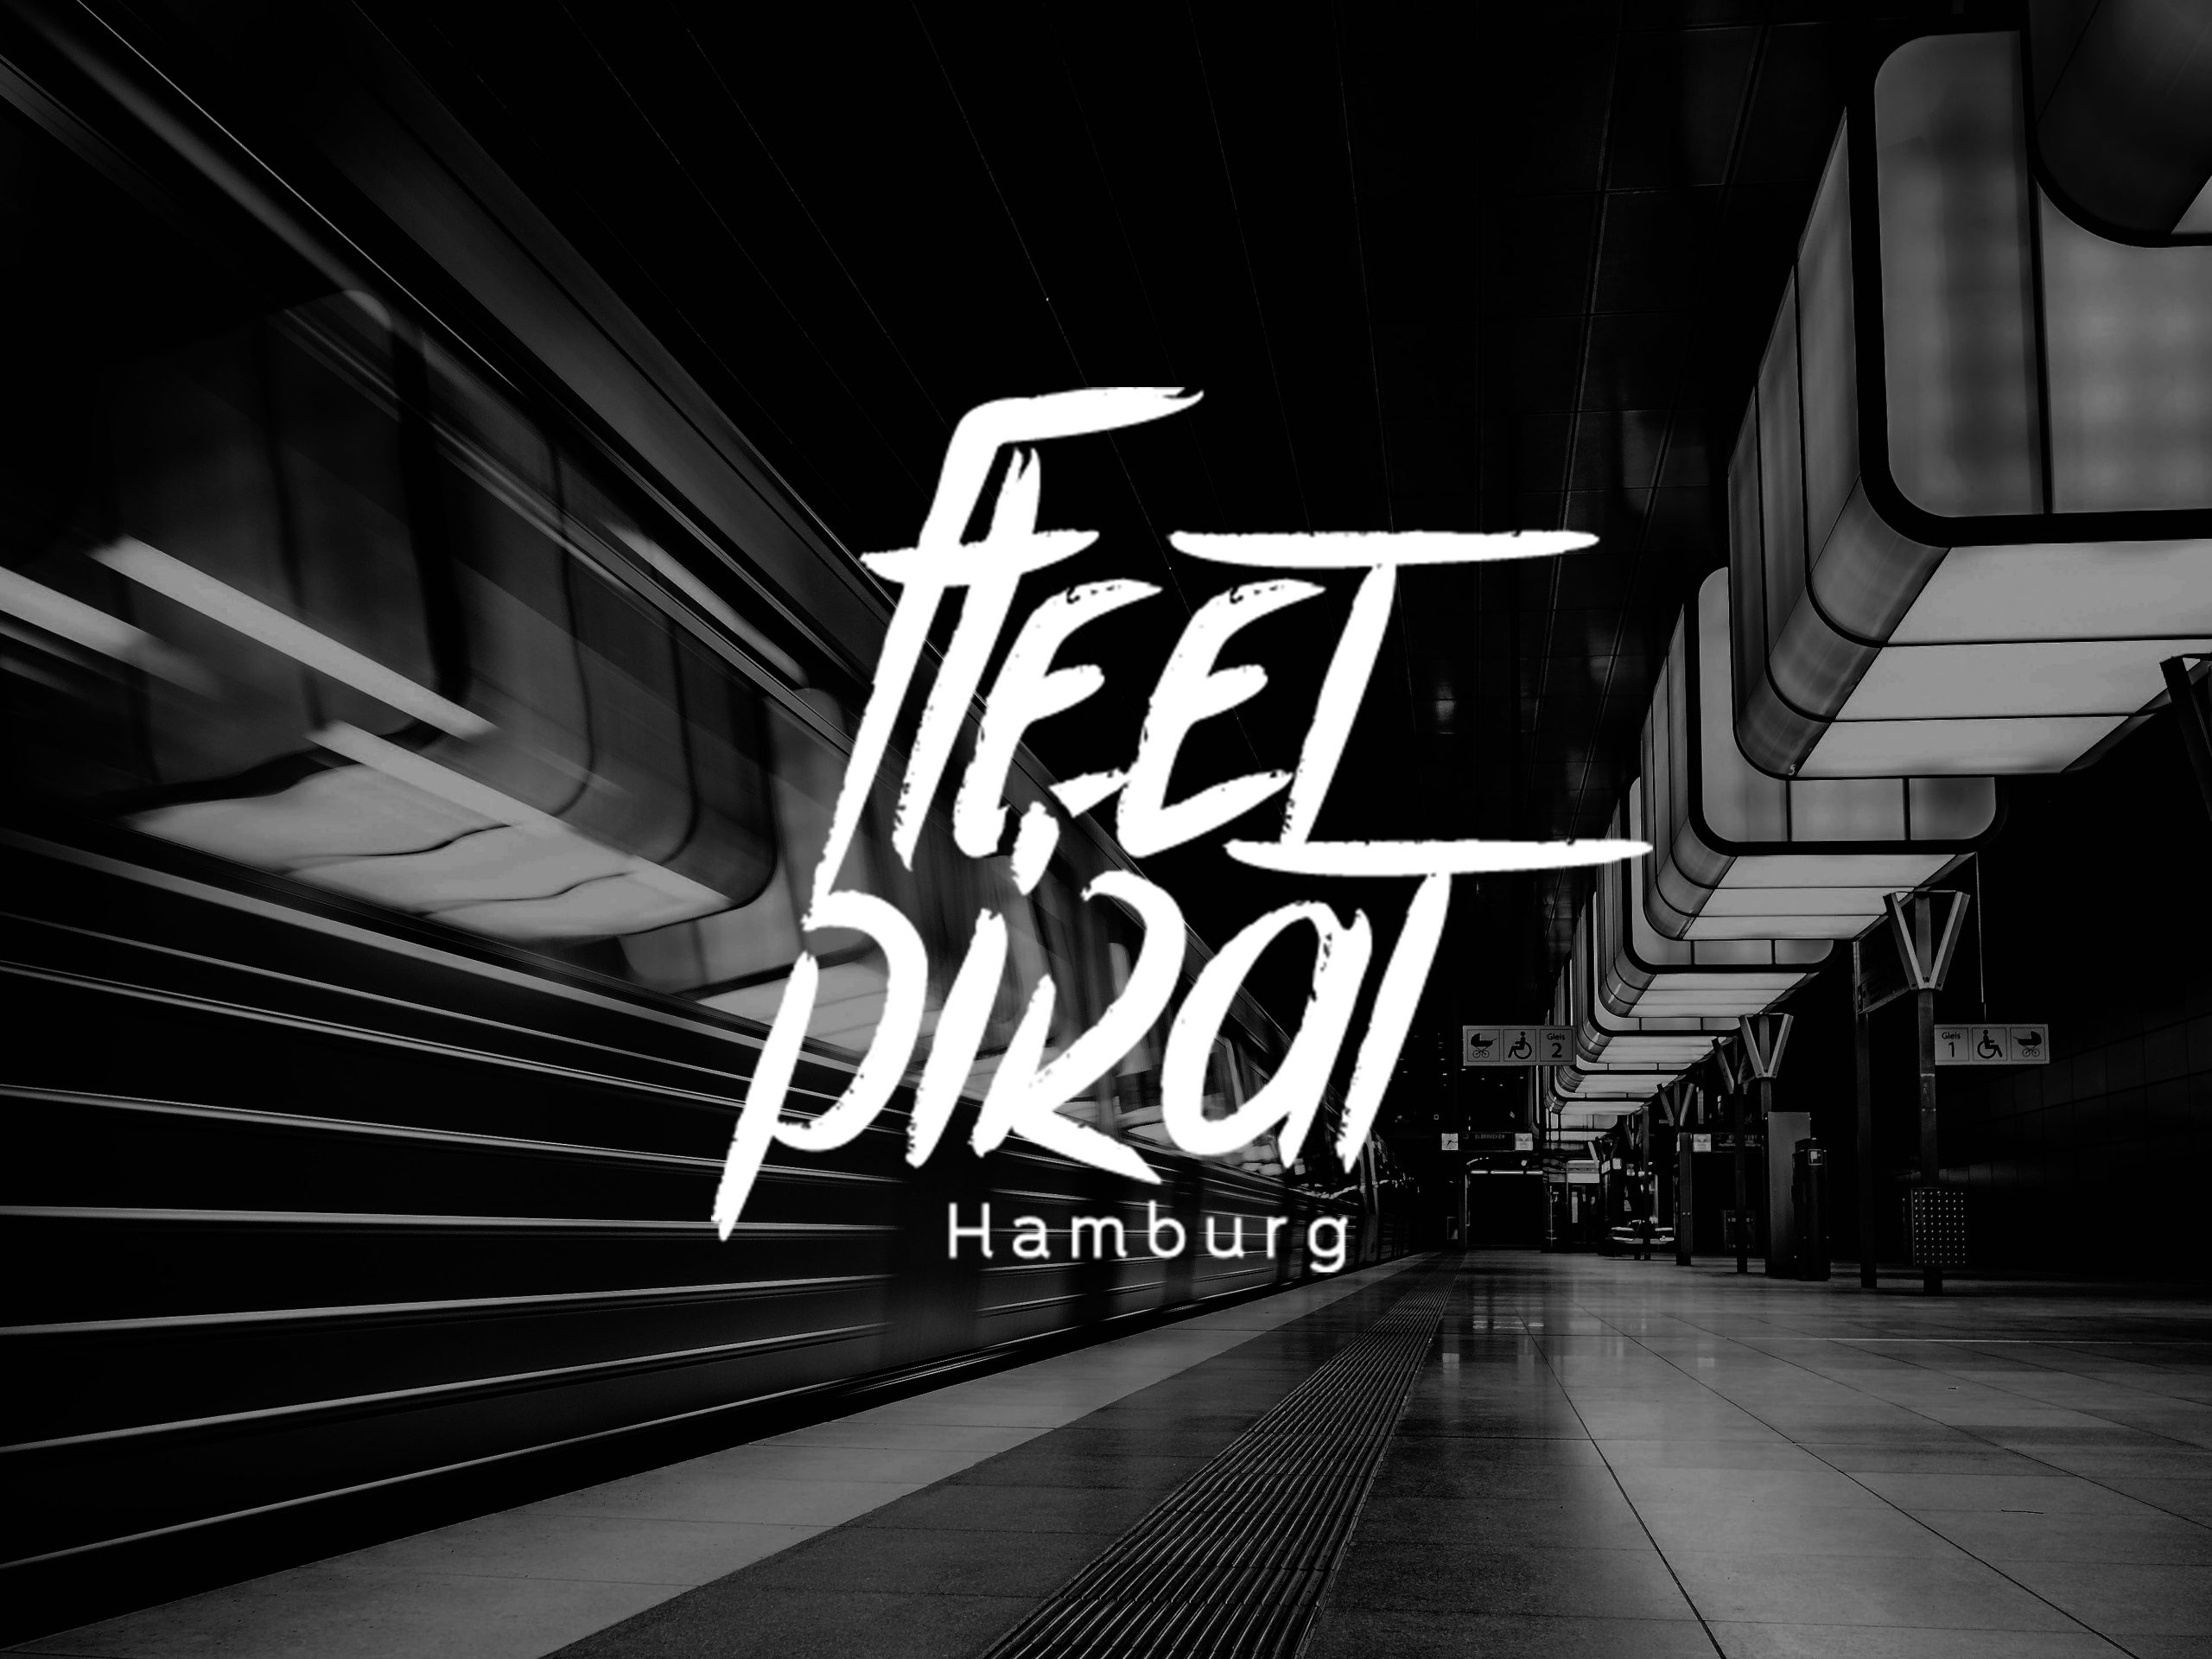 Corporate Design Fleetpirat Hamburg von Jan Sievers